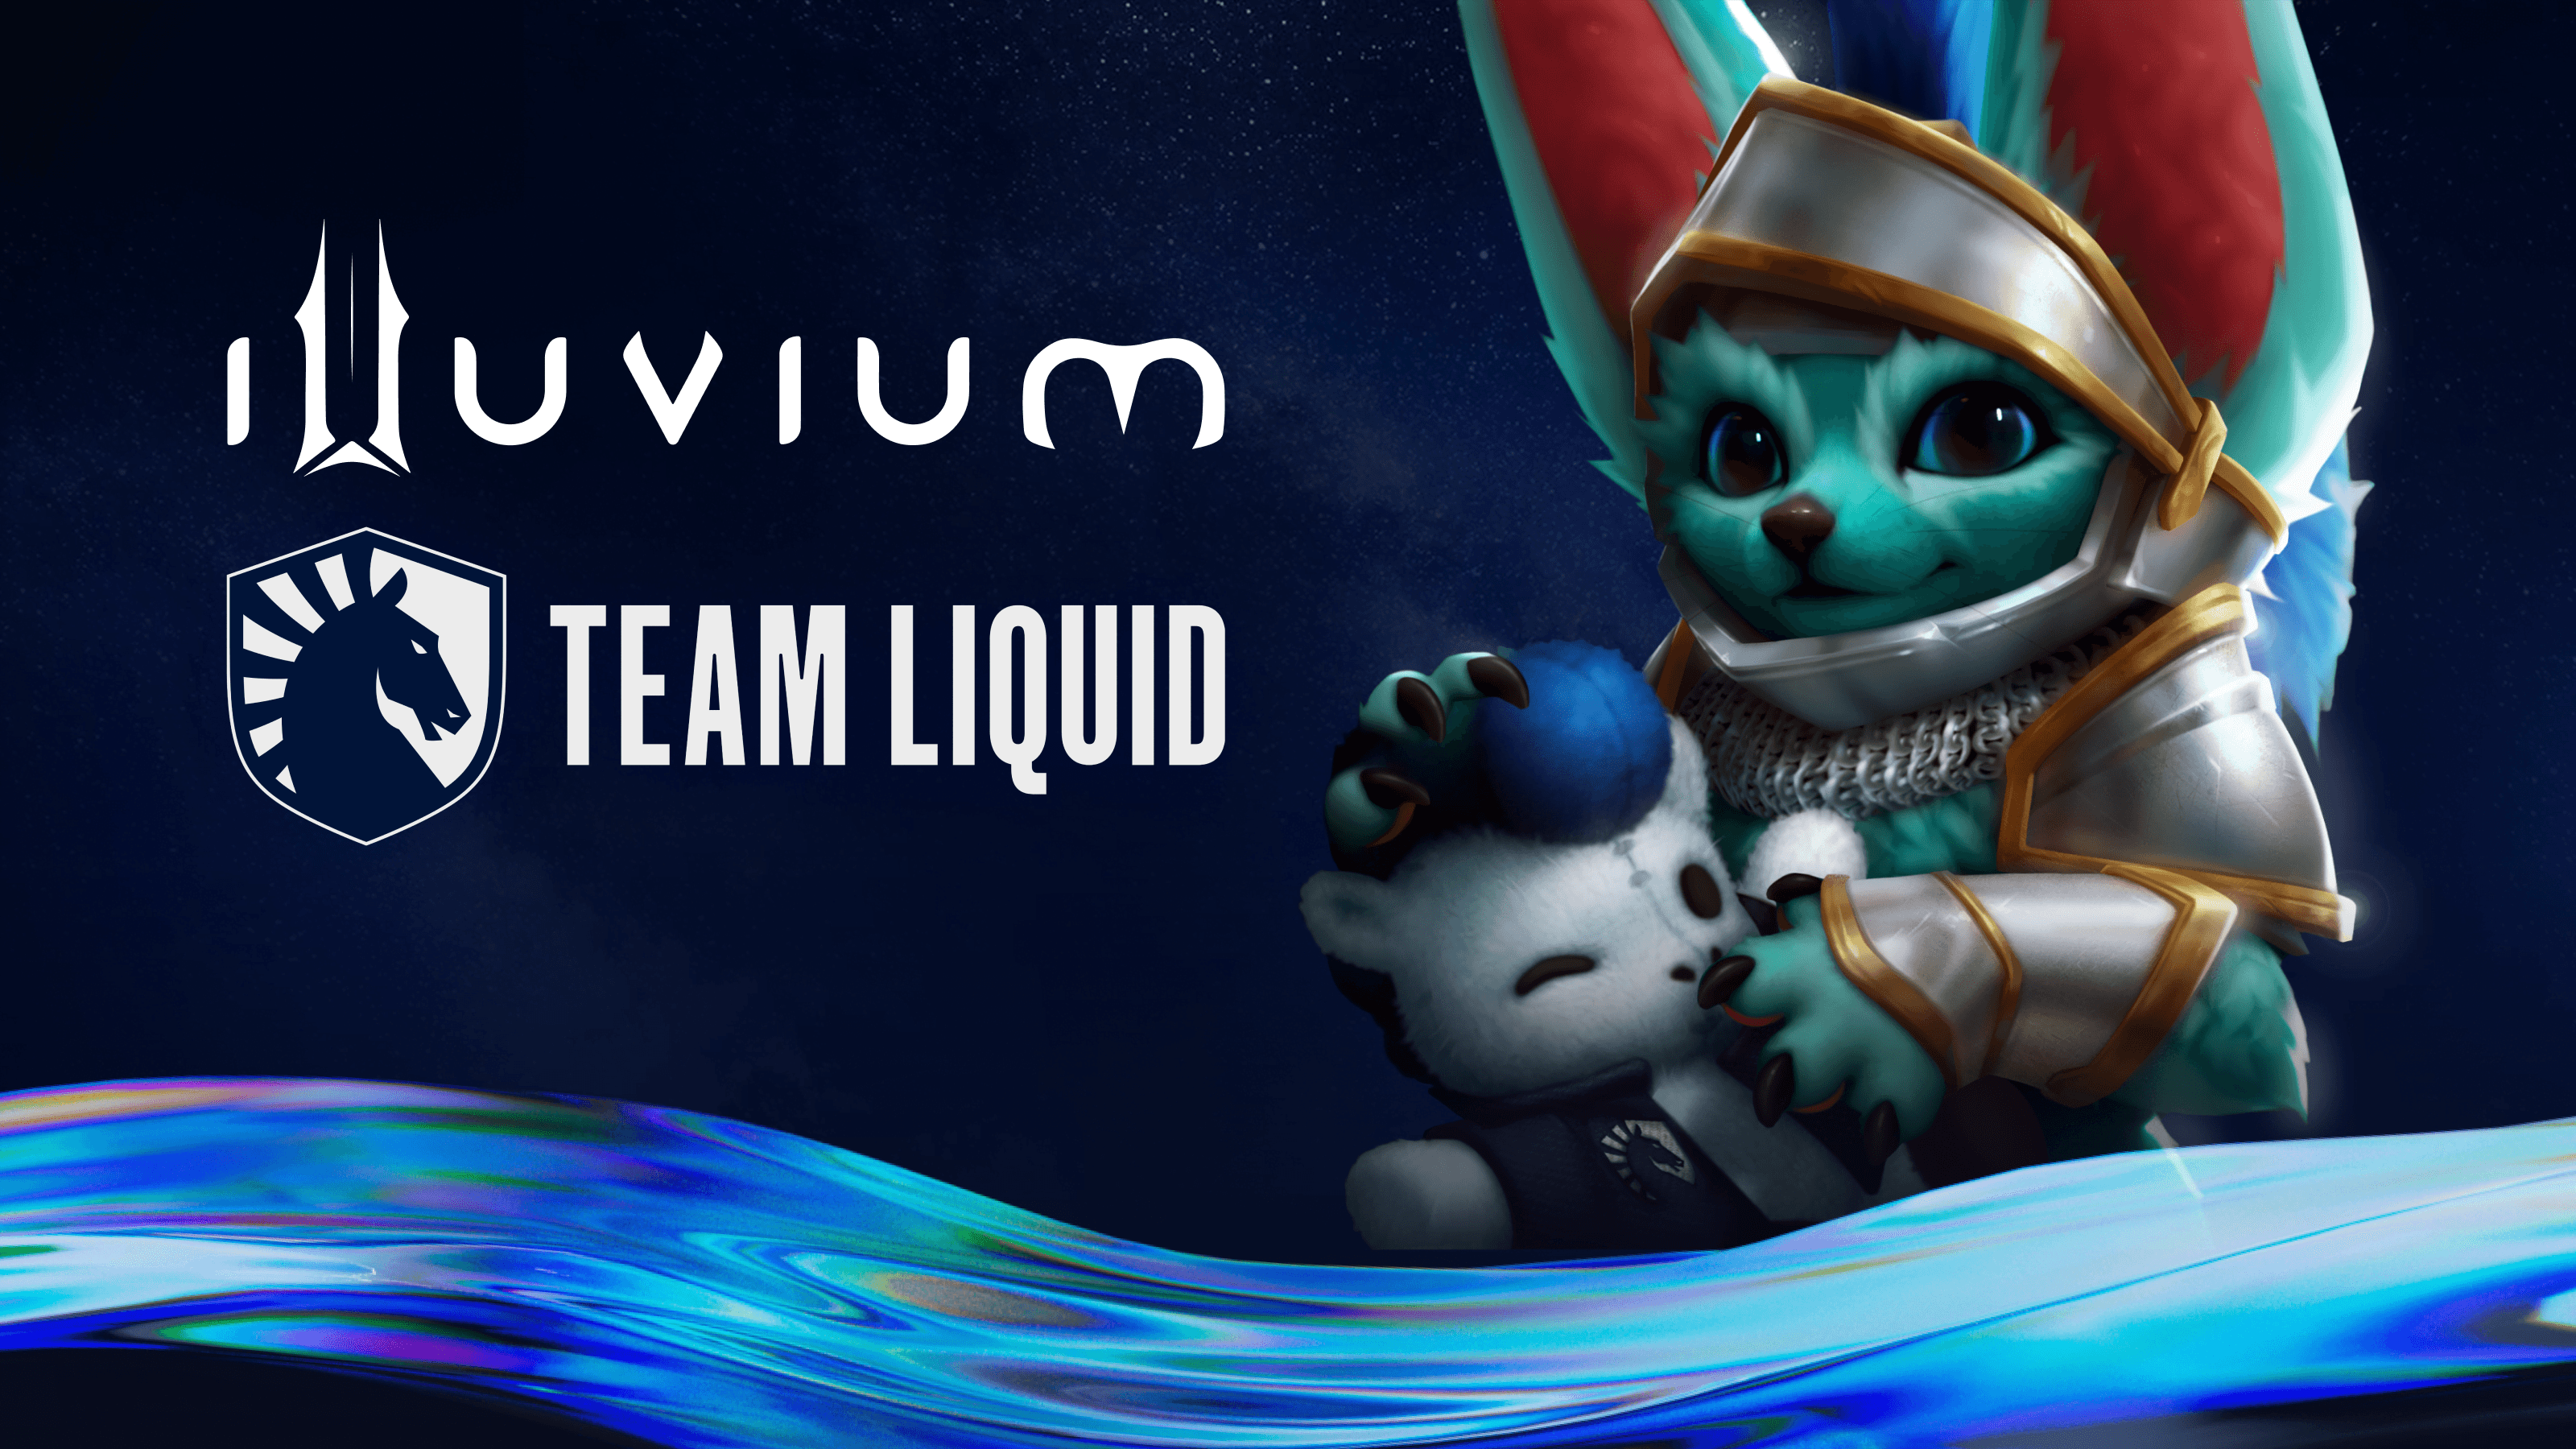 Team Liquid und Illuvium planen ein NFT-E-Sport-Turnier